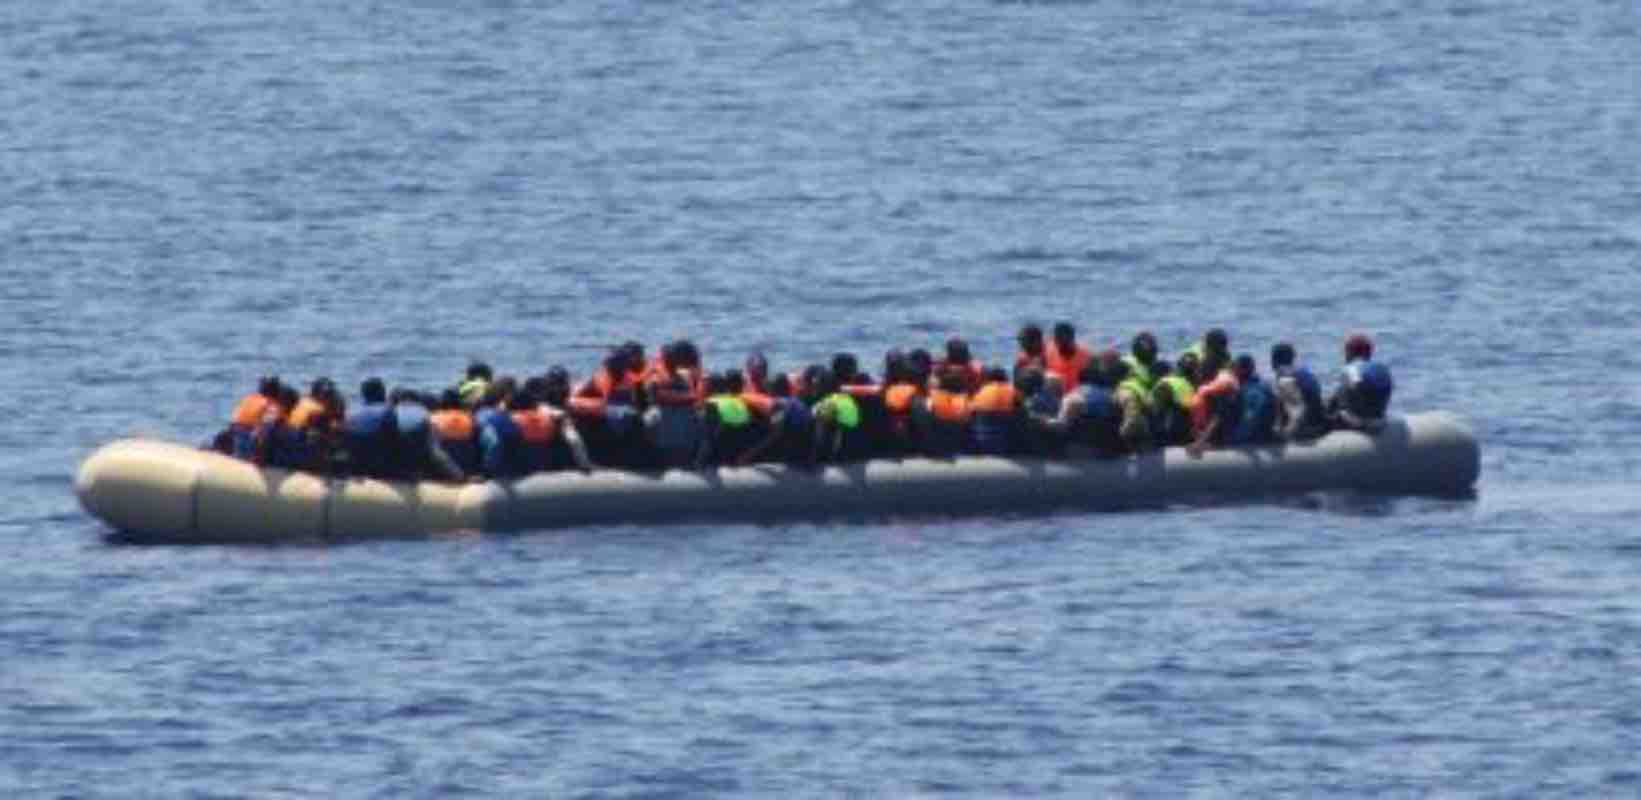 Tragico naufragiodi un barcone di migranti al largo della Mauritania